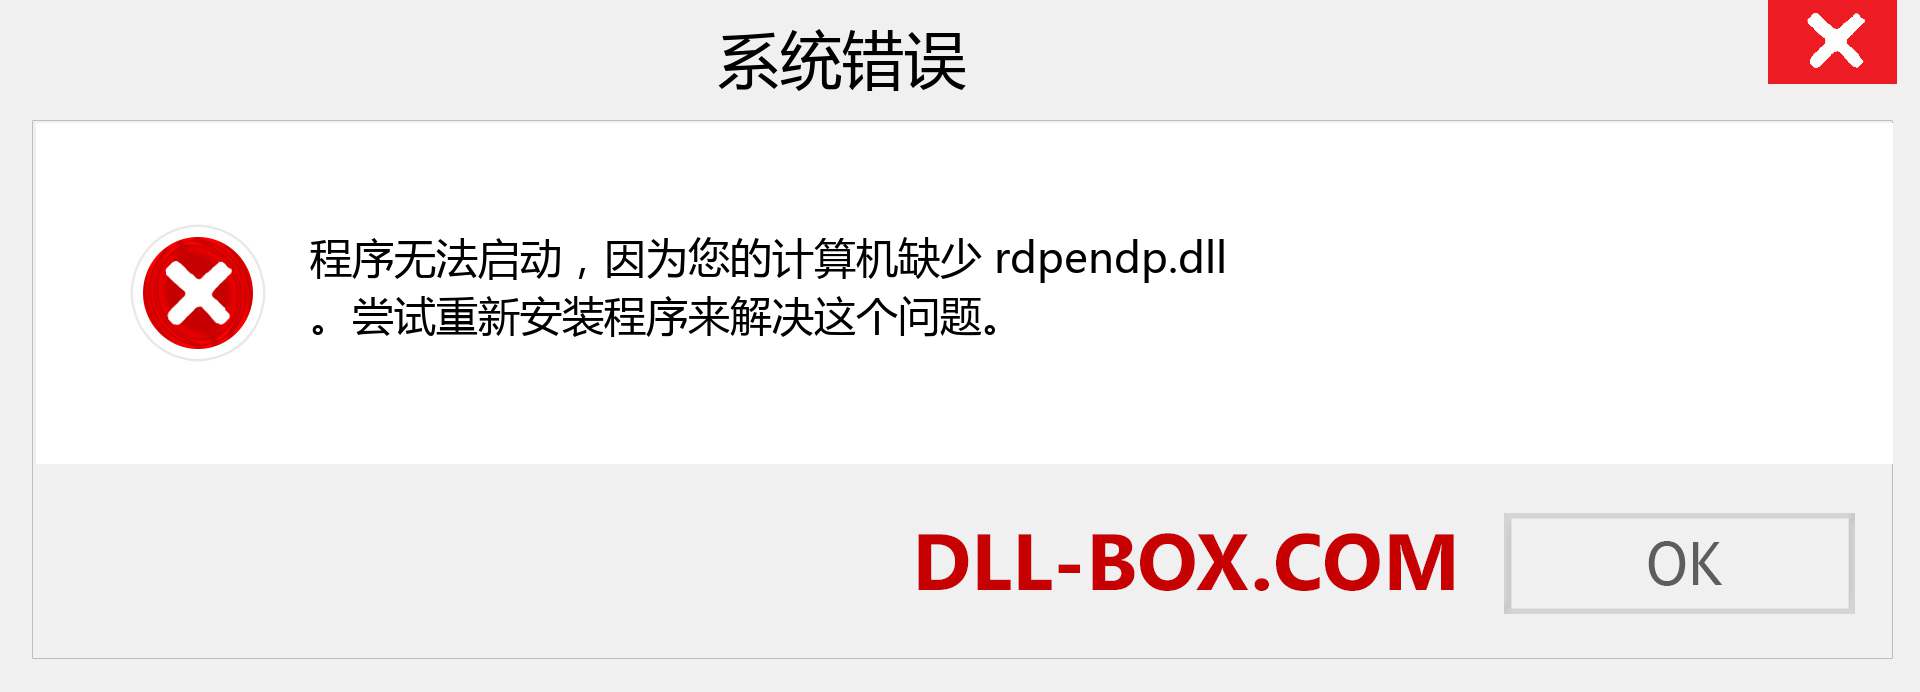 rdpendp.dll 文件丢失？。 适用于 Windows 7、8、10 的下载 - 修复 Windows、照片、图像上的 rdpendp dll 丢失错误